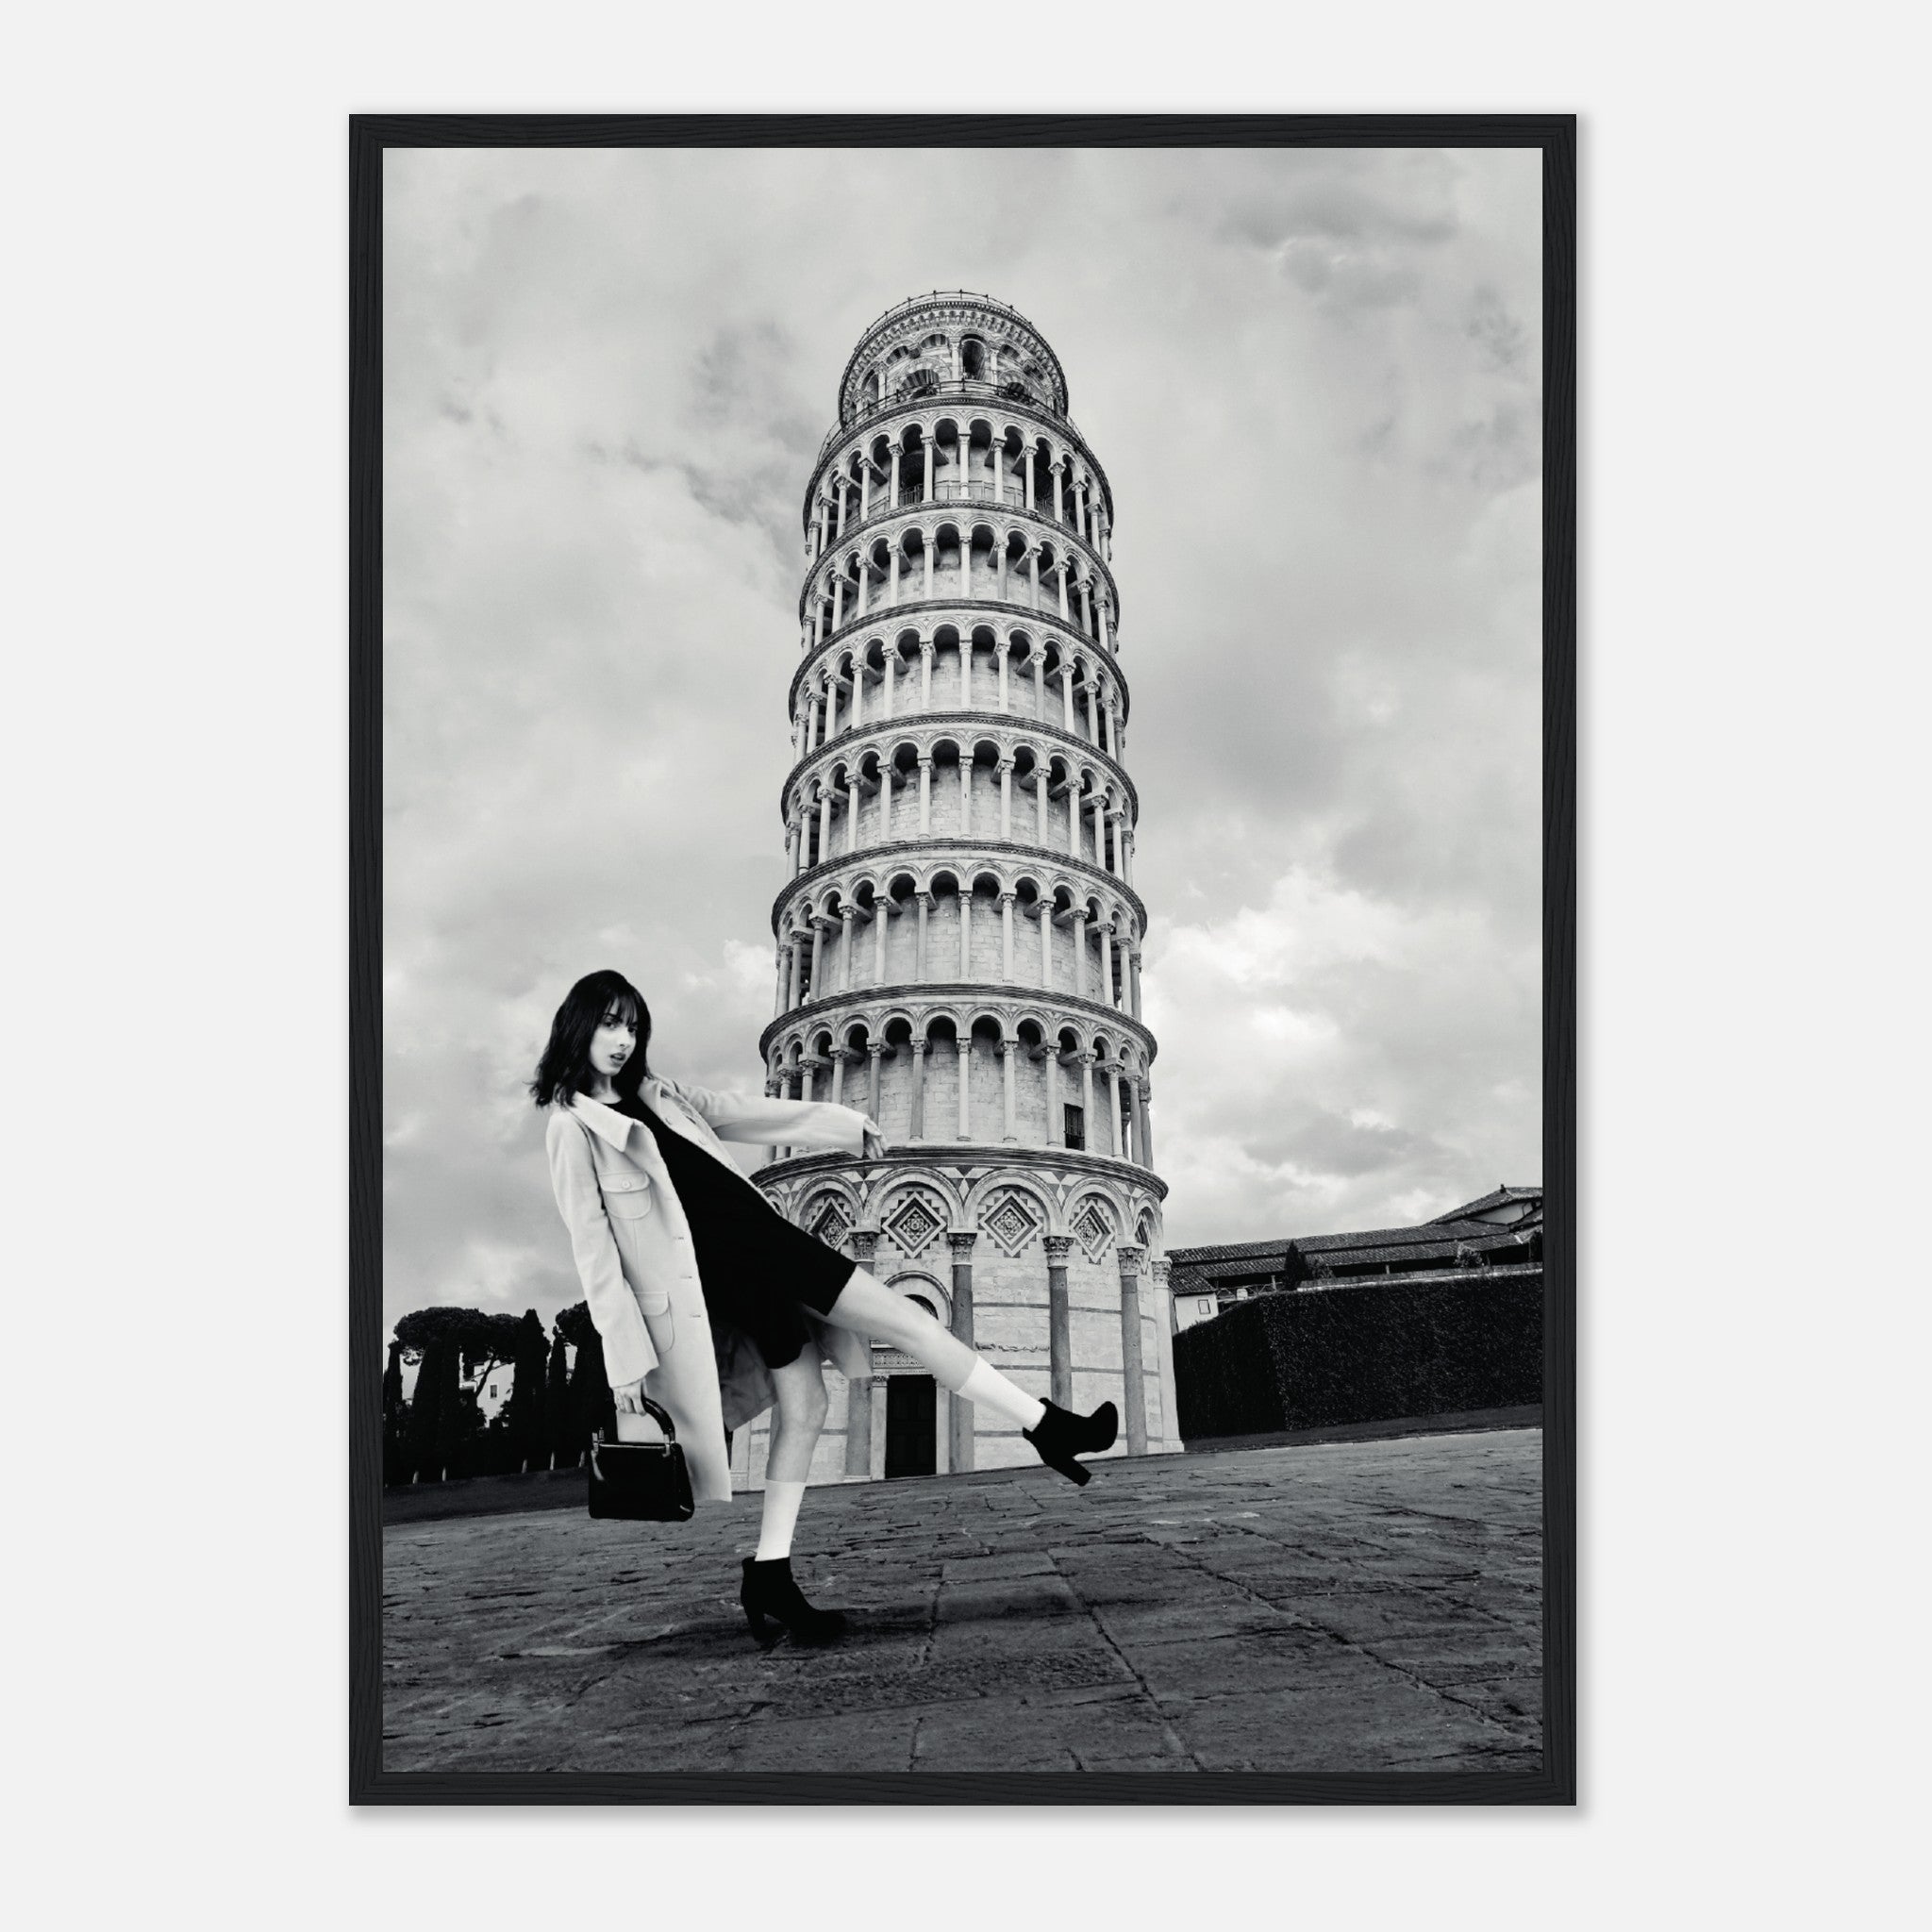 Póster Gente inclinada de Pisa en blanco y negro